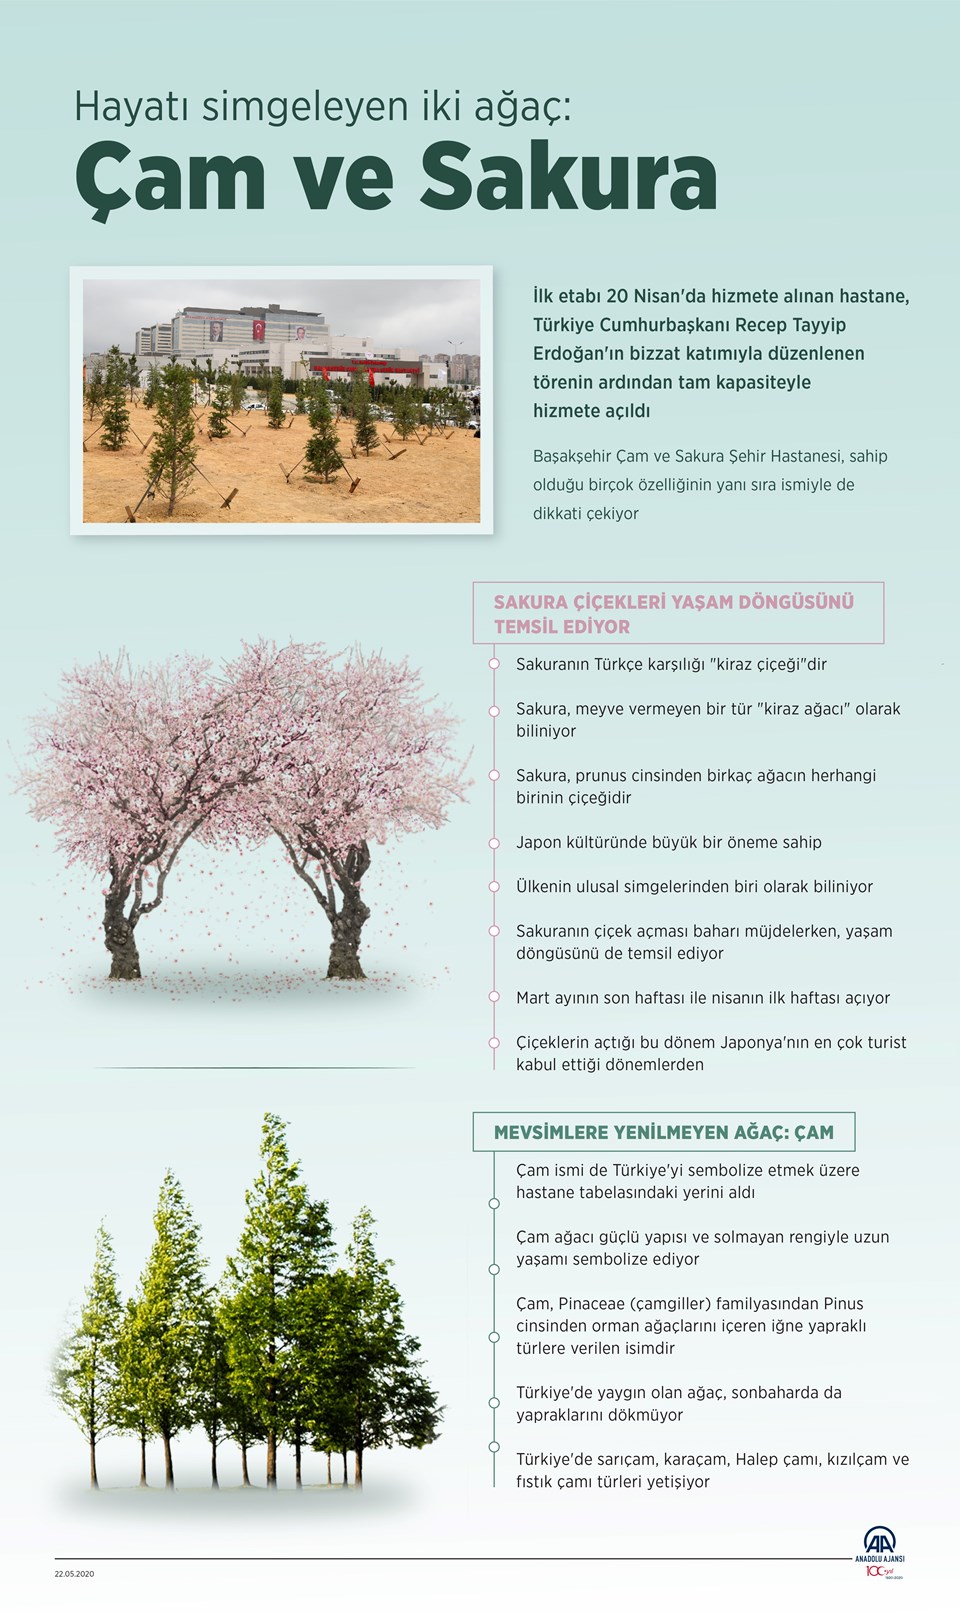 Çam ve Sakura ağaçlarının anlamı nedir? (Başakşehir Şehir Hastanesi'ne ismini veren Çam ve Sakura Ağacı) - 1